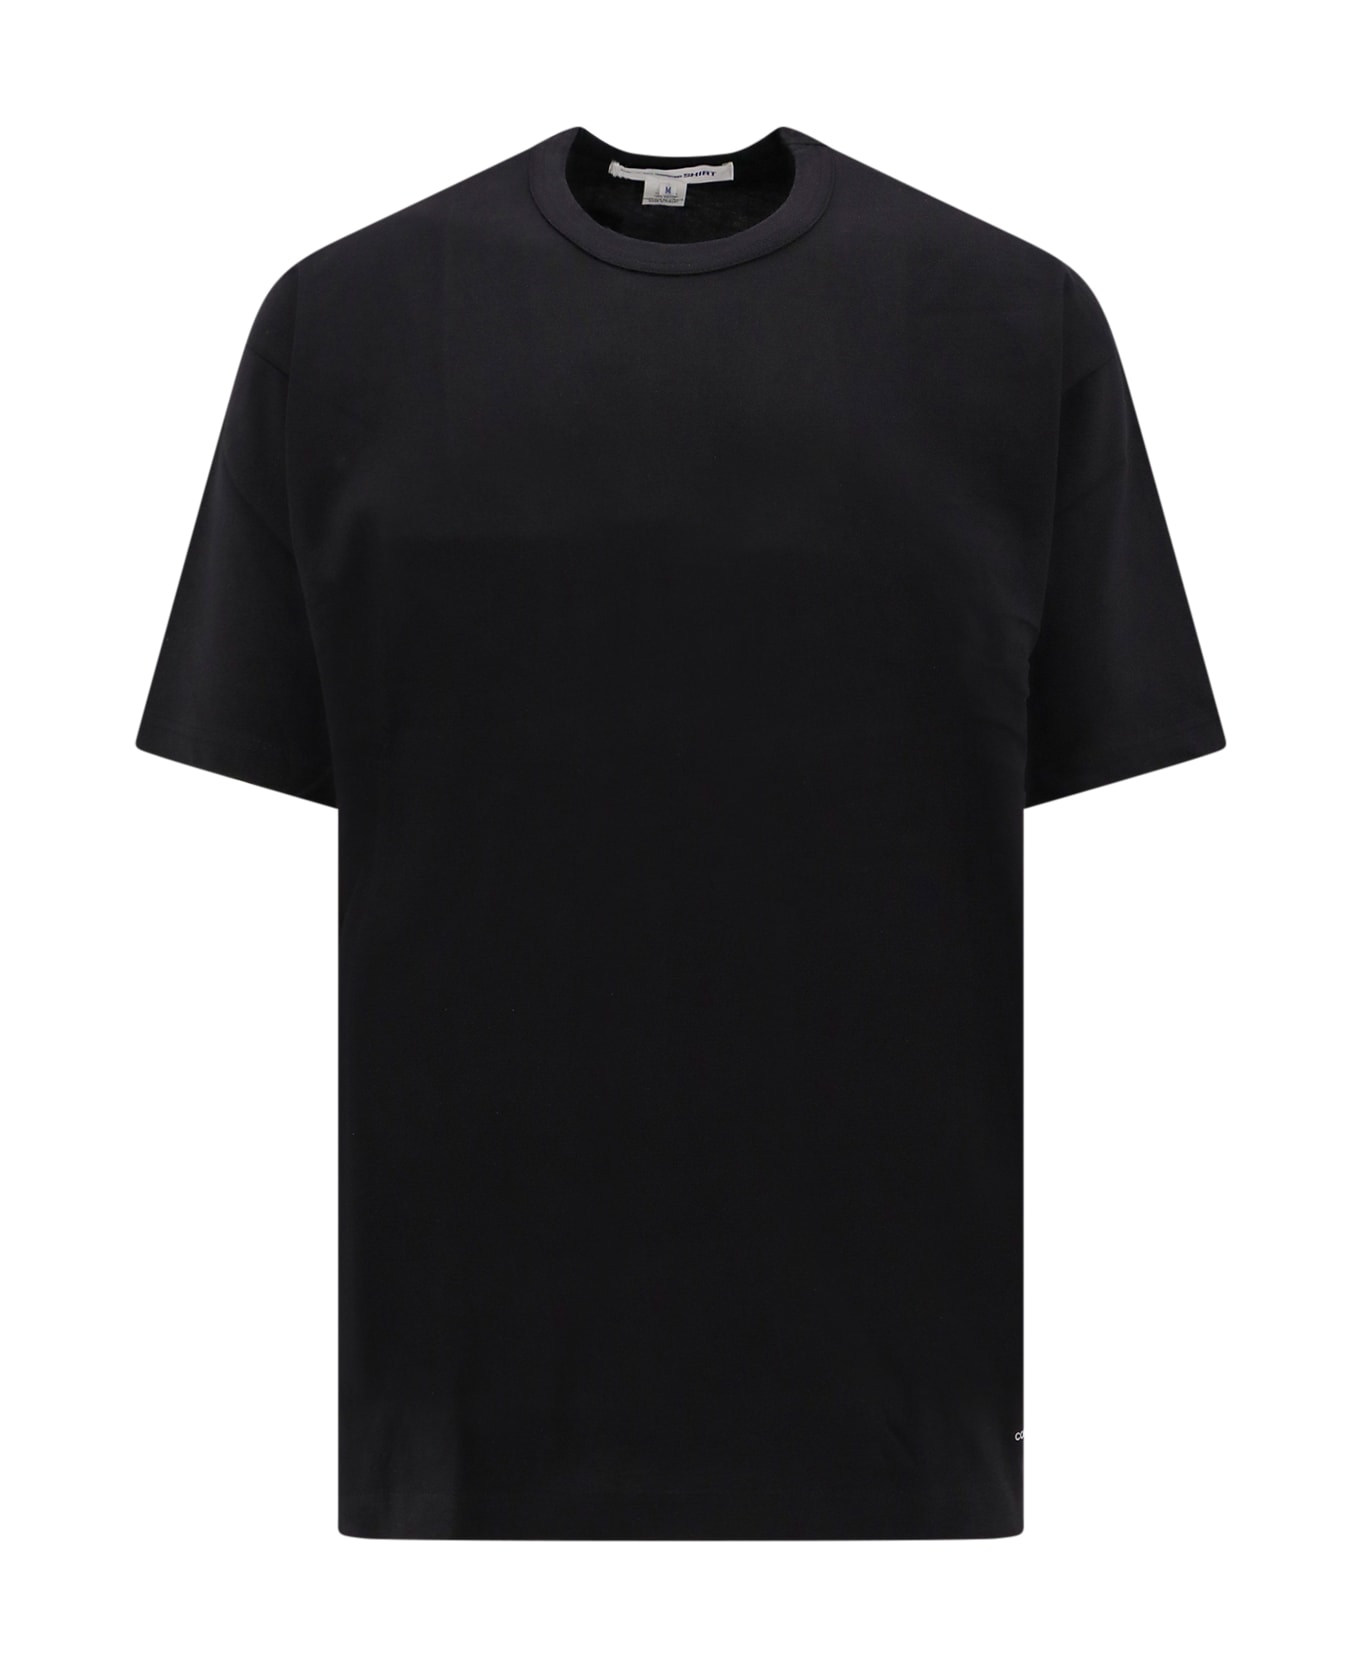 Comme des Garçons Shirt T-shirt - Black